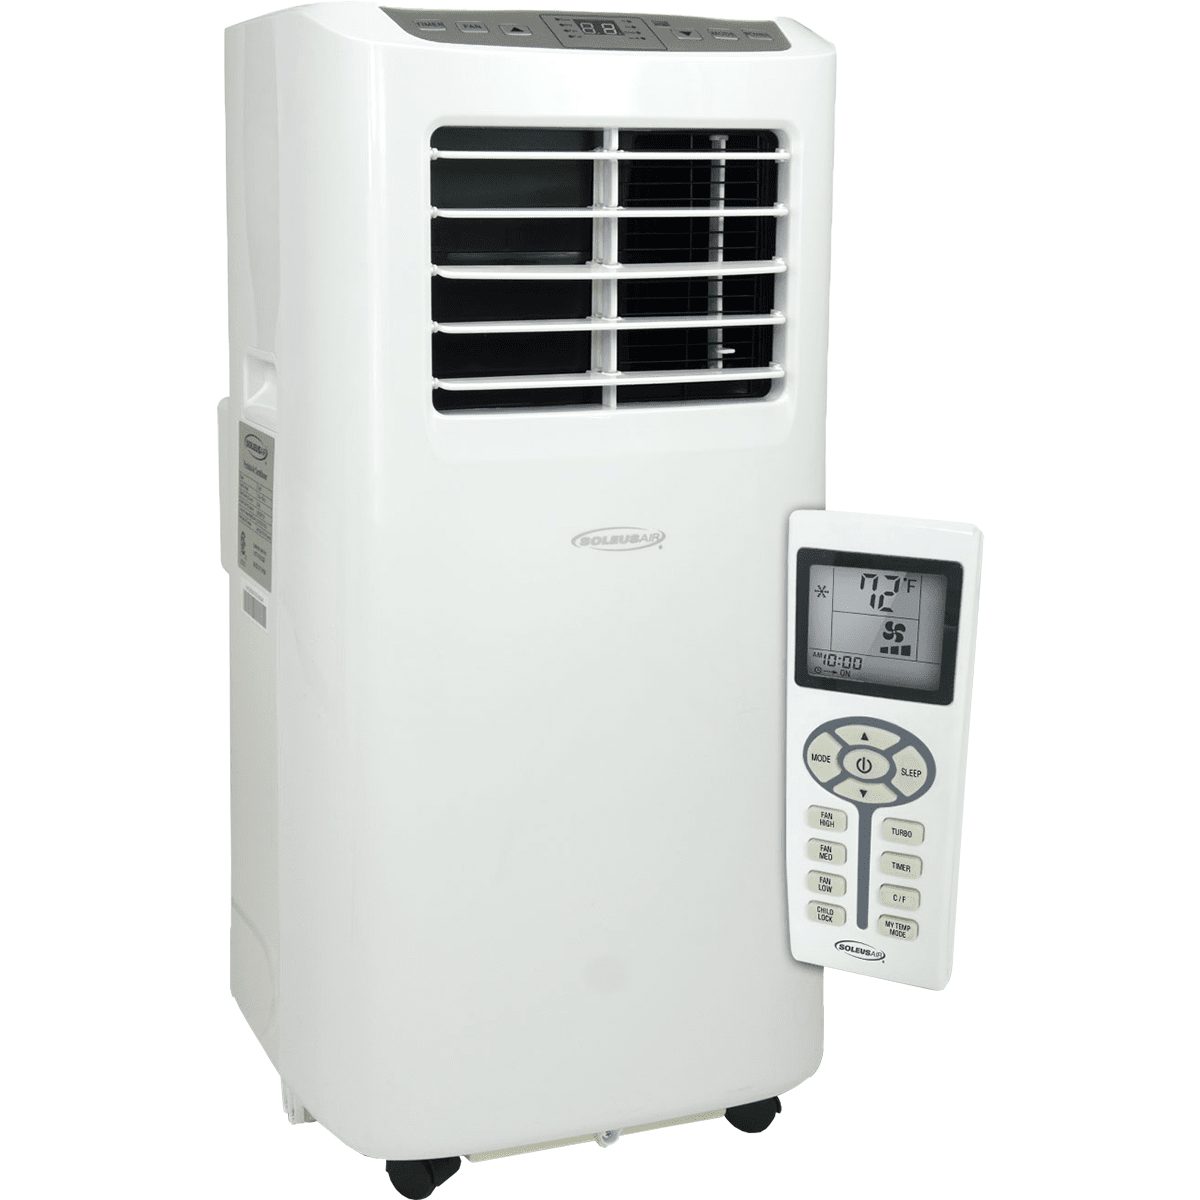 Soleus Air 8,000 BTU Portable Air Conditioner